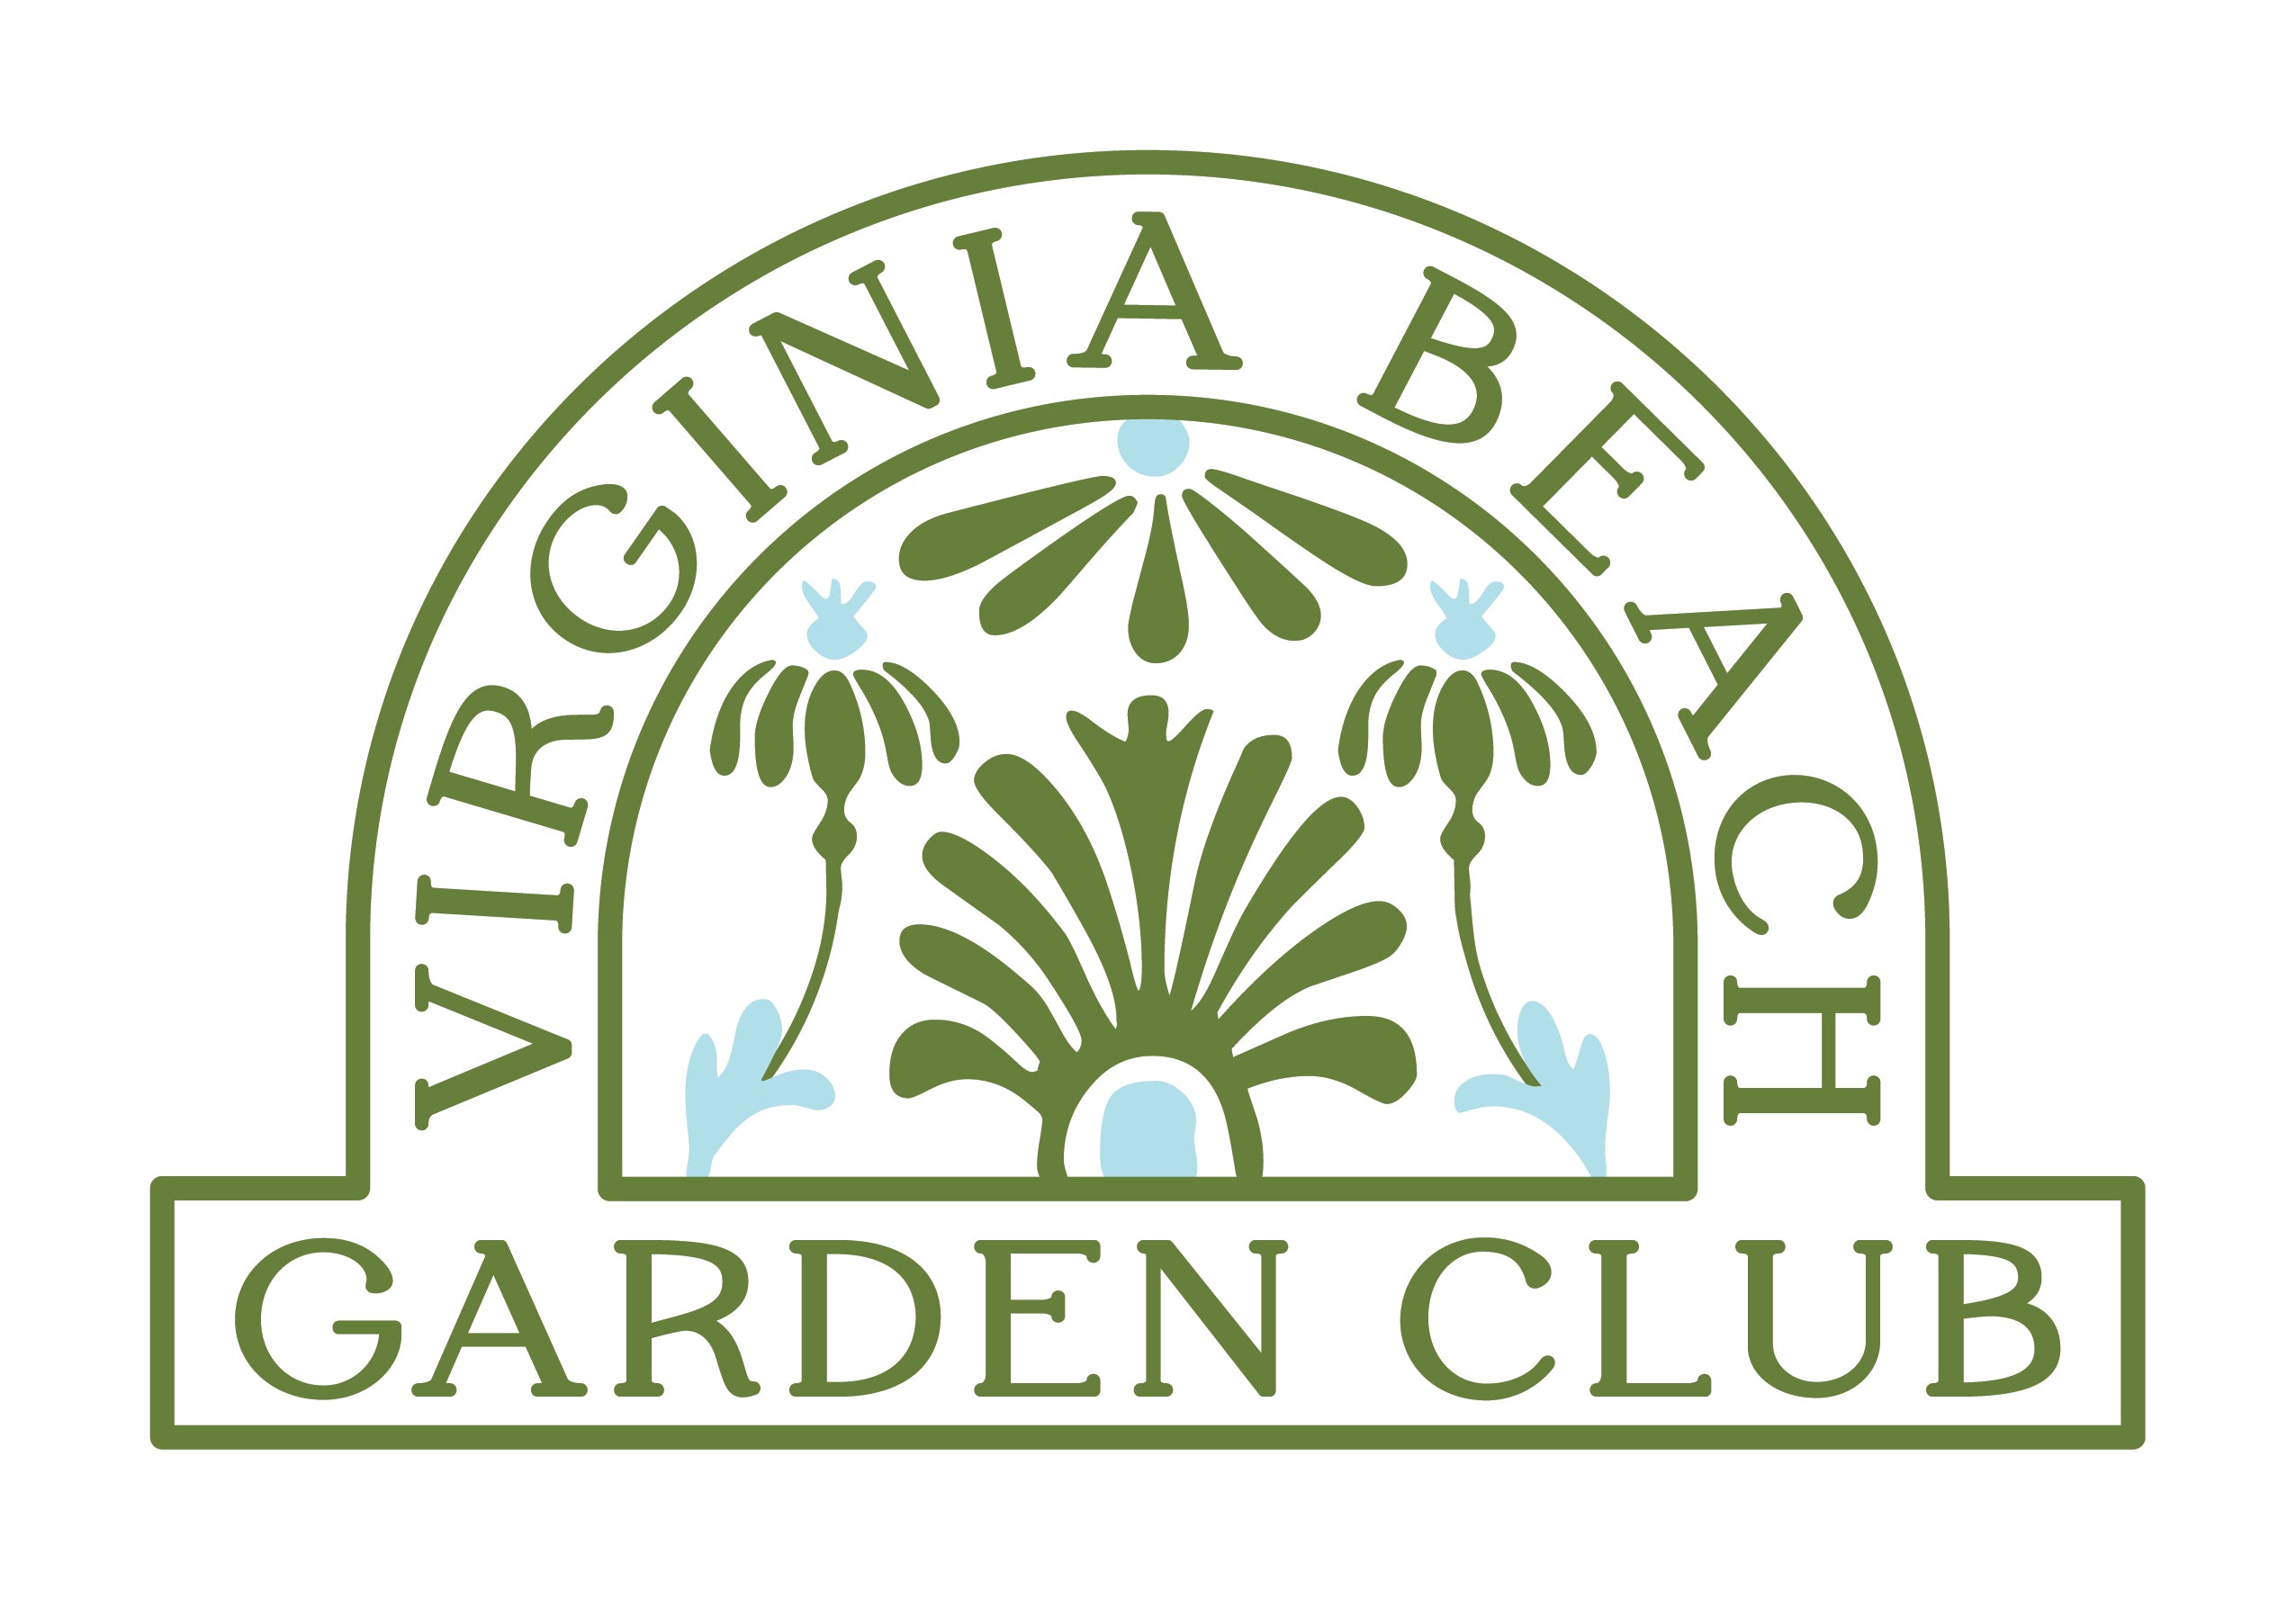 Garden Club of Virginia Beach – Virginia Beach Garden Club